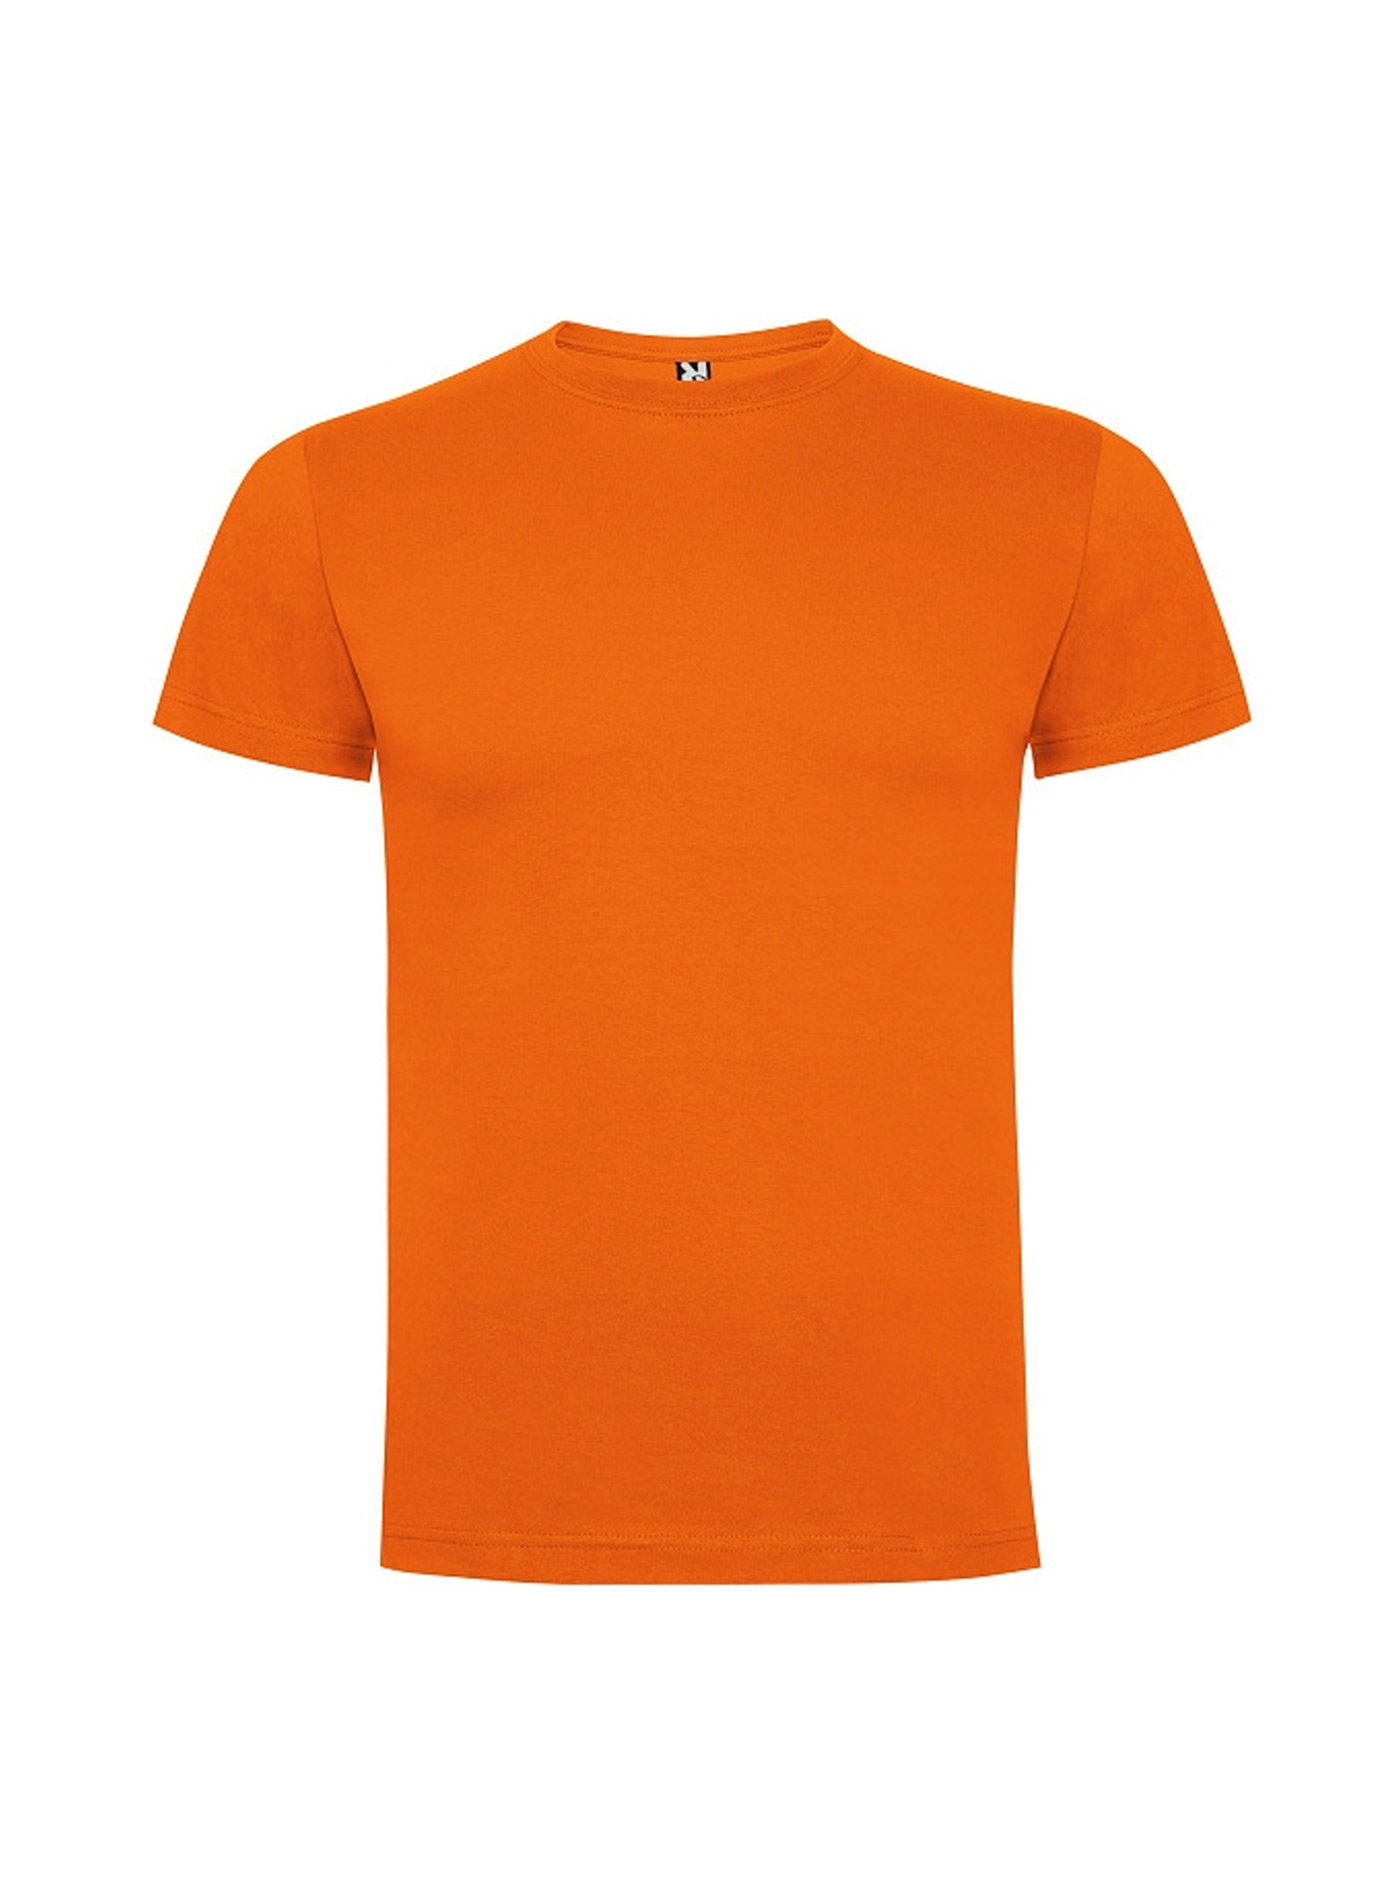 Dětské tričko Roly Dogo premium - Oranžová 3-4